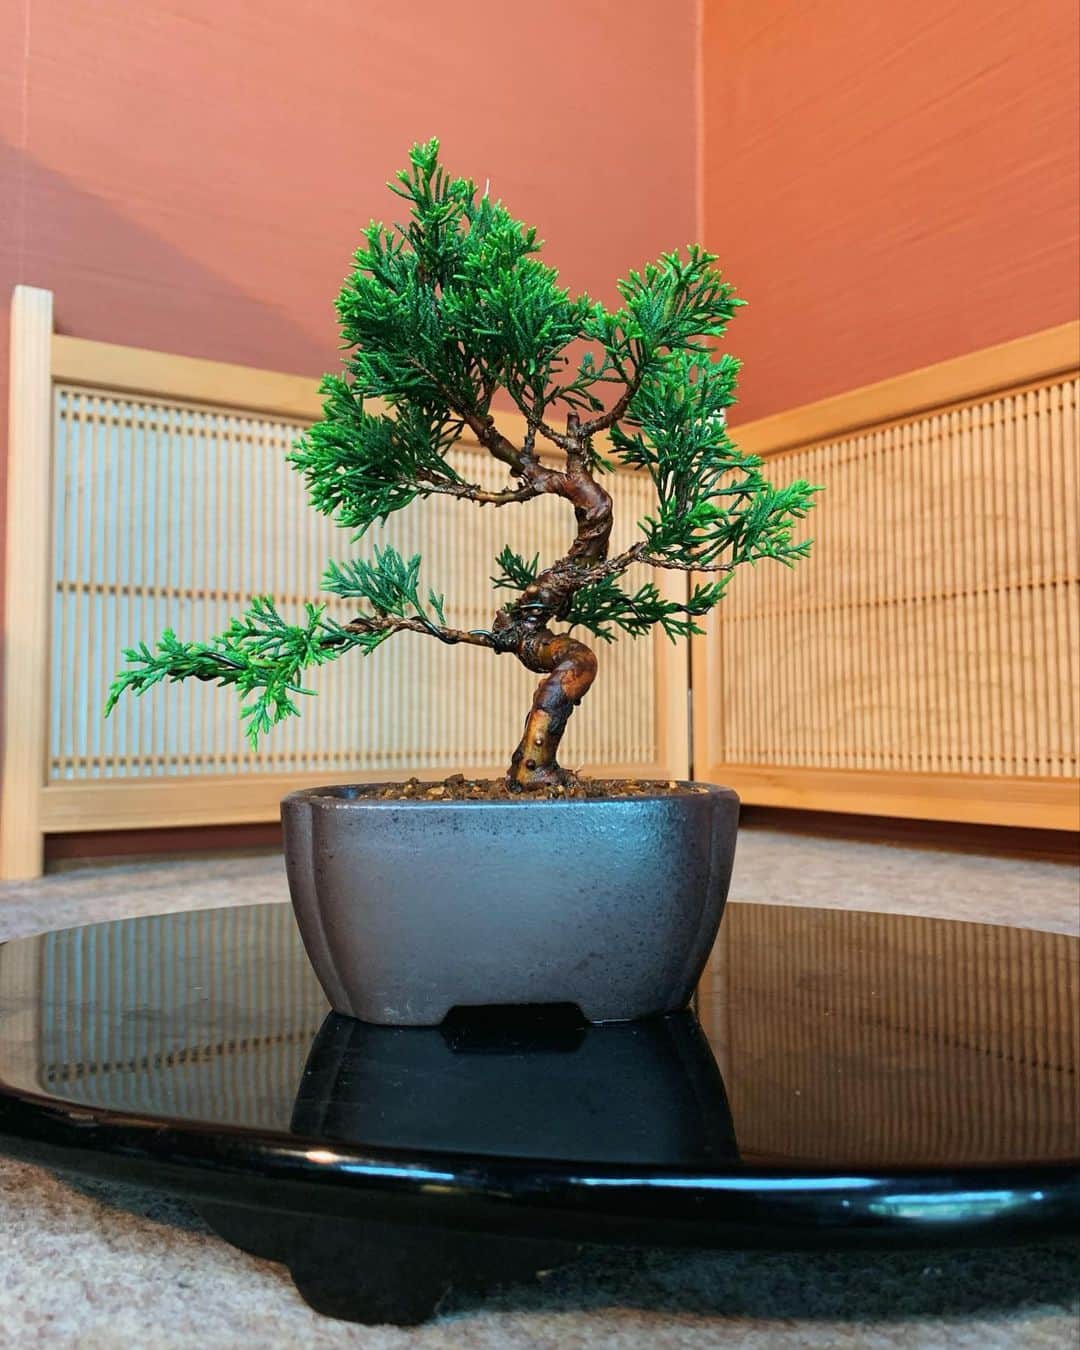 小原ブラスのインスタグラム：「#人生初 #盆栽 #bonsai   テレビ東京 #よじごじdays さんのロケで、生まれて初めて盆栽を作った！！(OA観てくれた方ありがとうございます。)  盆栽はとくに木の種類が決められている訳ではなくて、その辺の大抵の木で出来るらしんやけど、こちらは初心者でも比較的扱いやすい #真柏 という木を使いました🪴  どやぁ〜  「盆栽」って、年金暮らしの爺さんが死ぬ前の最後の一攫千金を狙って始める木々への虐待でしょ？って思ってたんだけど...  なんかね、大事に育てることで、今まであまり気にしなかった街の緑が目に入るようになって少しだけ視野が広がるし、むしろ植物に優しくなれる気がする。  とりあえずこの子をきっかけに、他にも挑戦したいし、絶対に枯らさないように毎日水やり頑張る💪💪💪 私がお爺ちゃんになる頃にはそれこそ一攫千金目指すわ💰 うん百万円という値段を叩き出したいわね！！  てかハッシュタグなんだけど #盆栽 ←87万投稿 #bonsai ←366万投稿 日本人よりも、外国人のが魅了されてる！？ 確かに盆栽見に外国人がた沢山来てたわ。 日本人もっと興味持って😂  ===本日のボヤキ=== コンビニの透明な傘って、急な雨にあったタイミングで買うから増えるんだけど、一時期家に10本くらいたまって...それが折り畳み傘を持ち歩くようになってから減っていき、先日最後の1本を友人に貸してついにゼロになった。そしてこのタイミングで、折り畳み傘も無くした。 雨がよく降るこの季節に傘に嫌われ始めたのかな。傘が増えたり減ったり、なぞのループで安定しない。  #明日 #5時に夢中 #gojimu #みてや #ぴ」